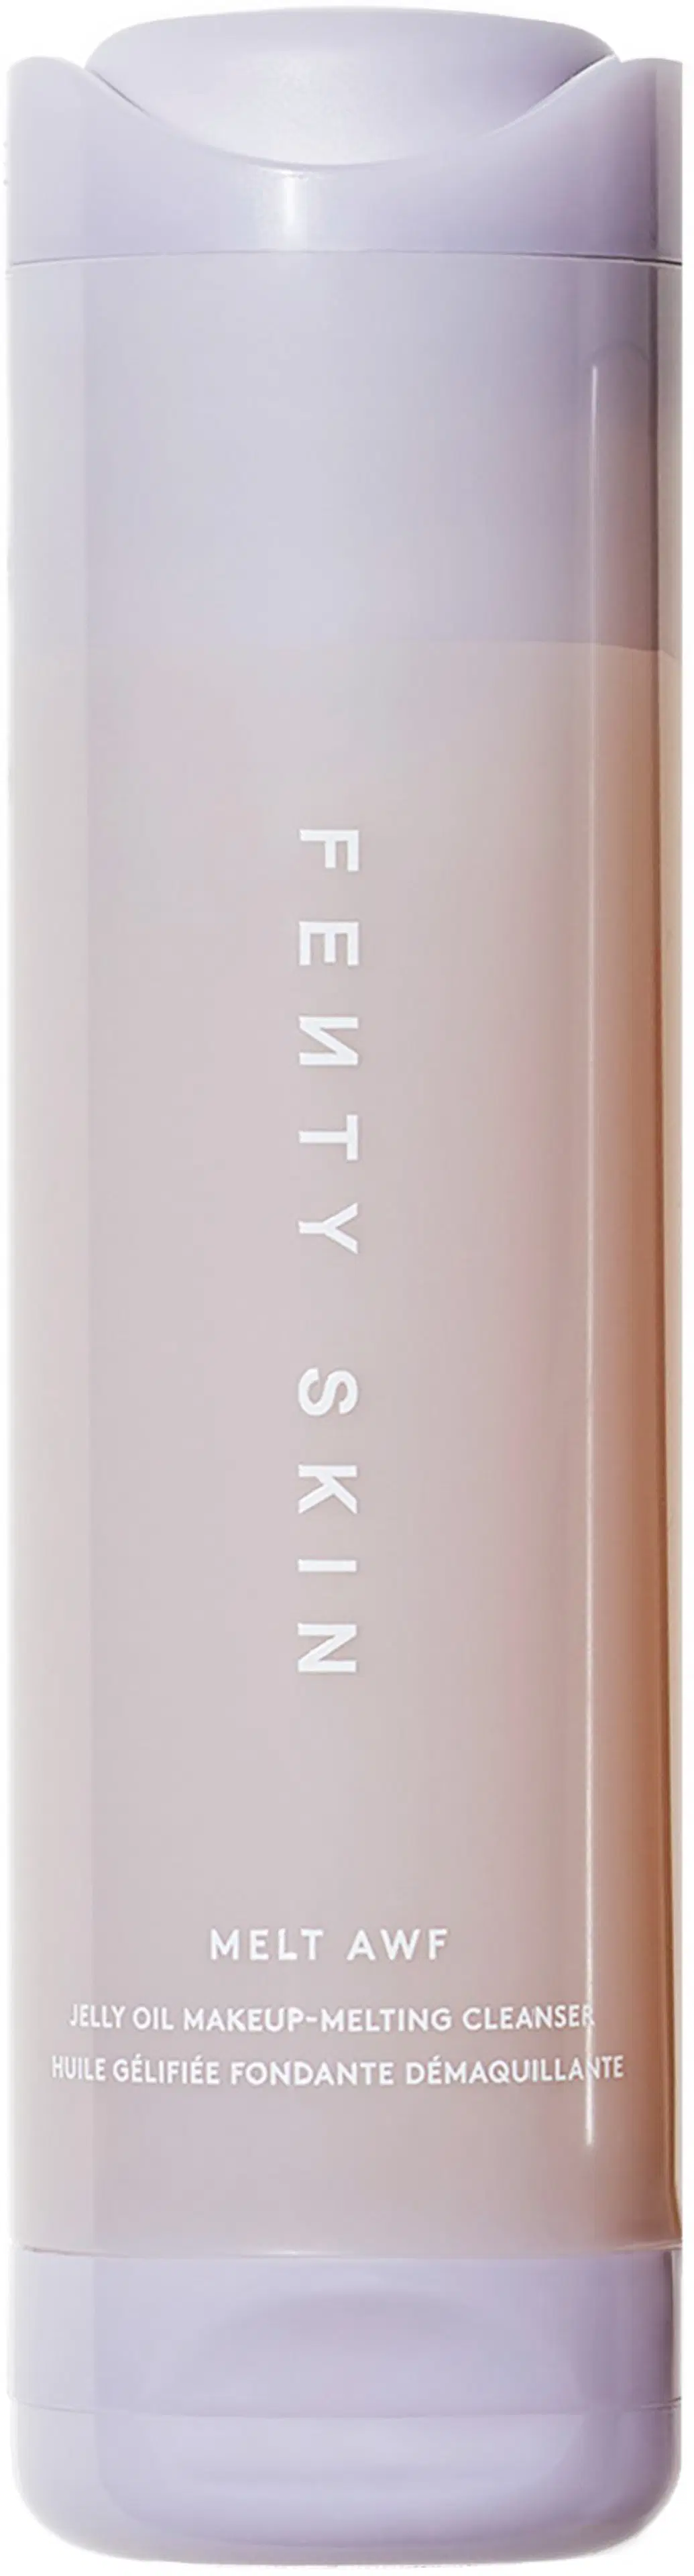 Fenty Skin Melt Awf Jelly Oil Makeup-Melting Cleanser puhdistusvoide 100 ml